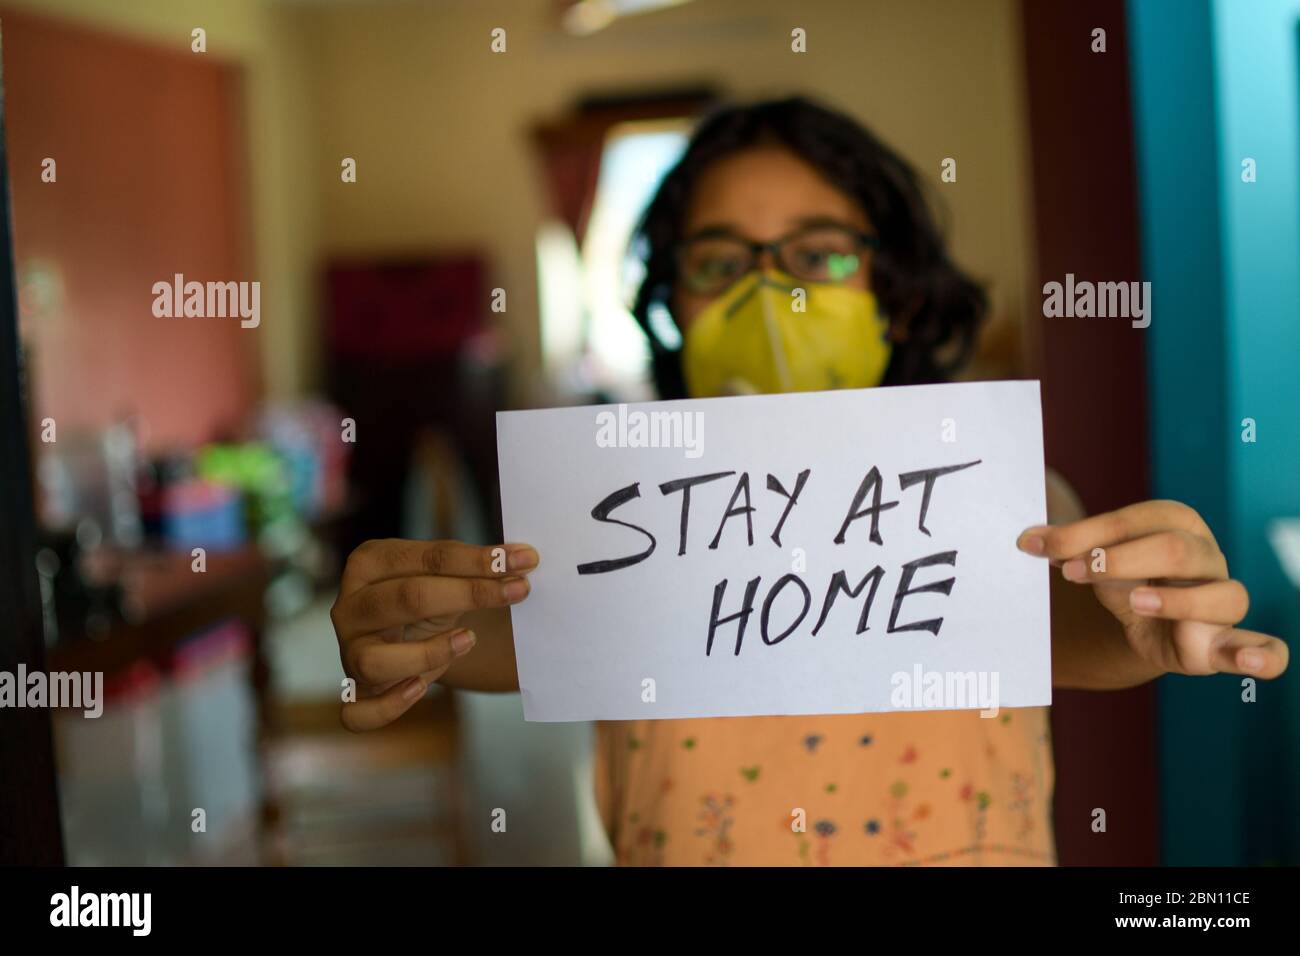 La bambina indiana che indossa la maschera facciale tiene un cartello in mano mostrando un messaggio 'Say at Home' durante la pandemia COVID-19 per mantenere la distanza sociale. Foto Stock